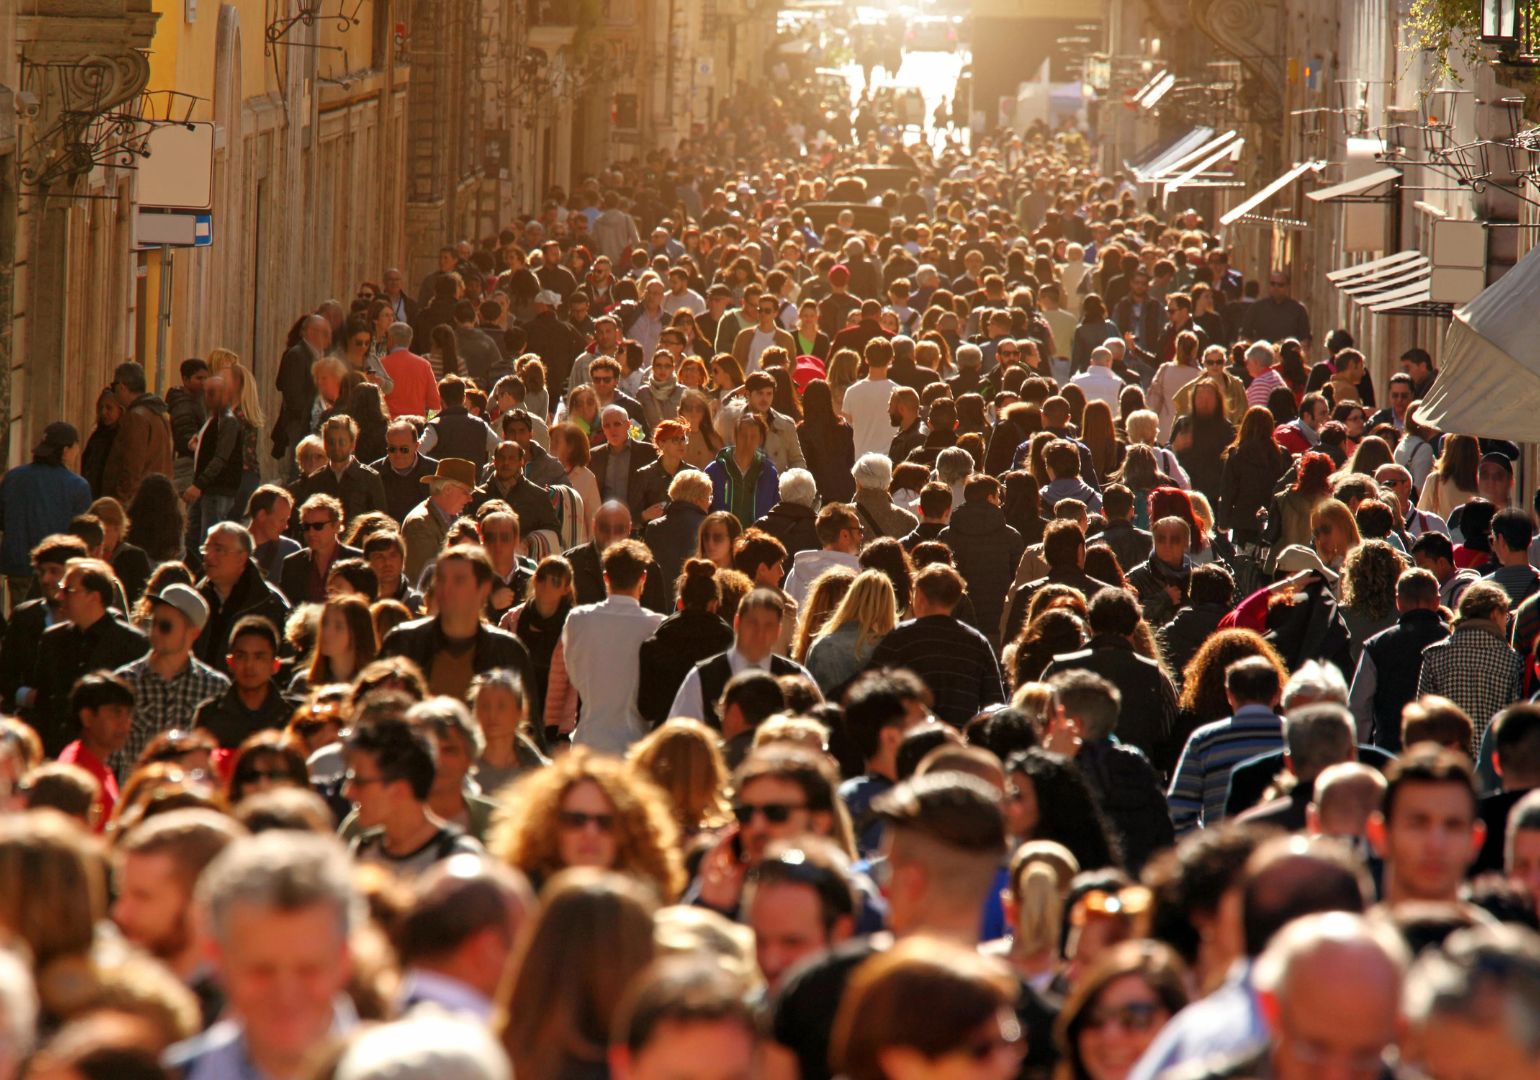 როგორ შეიცვლება მსოფლიო მოსახლეობის რაოდენობა 2050 წლისთვის?